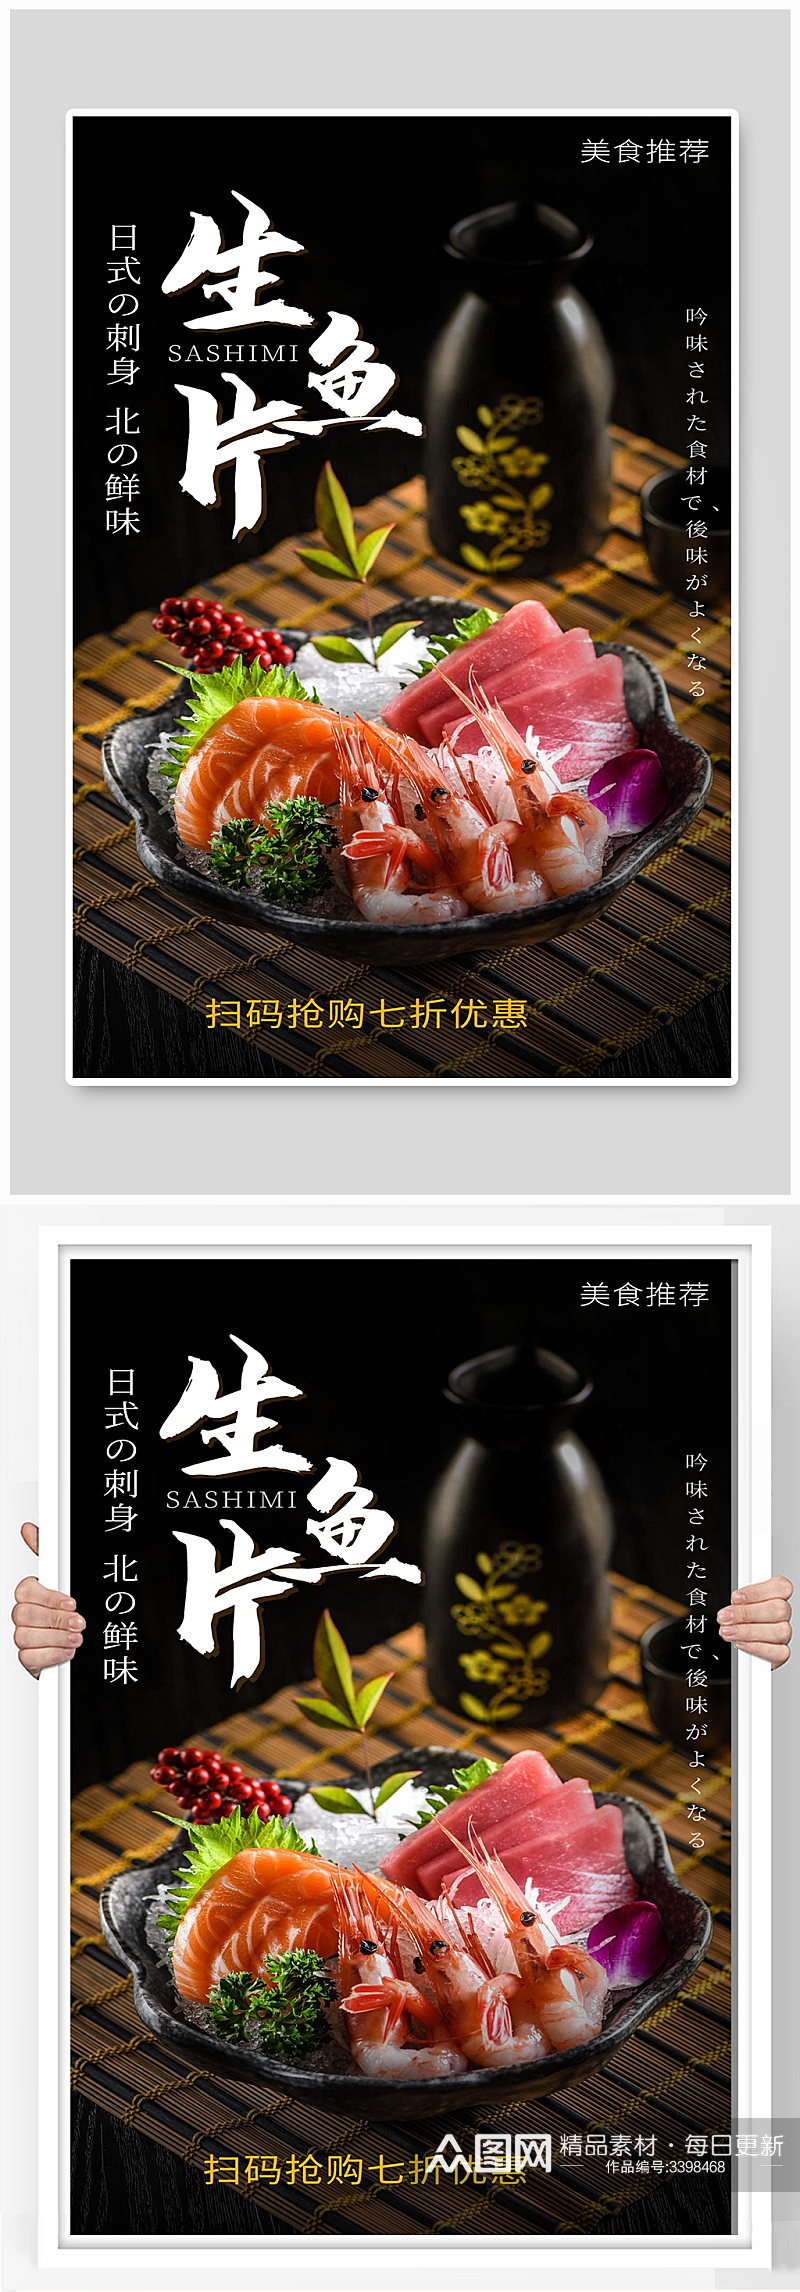 片片鱼宣传海报设计扫码抢购素材